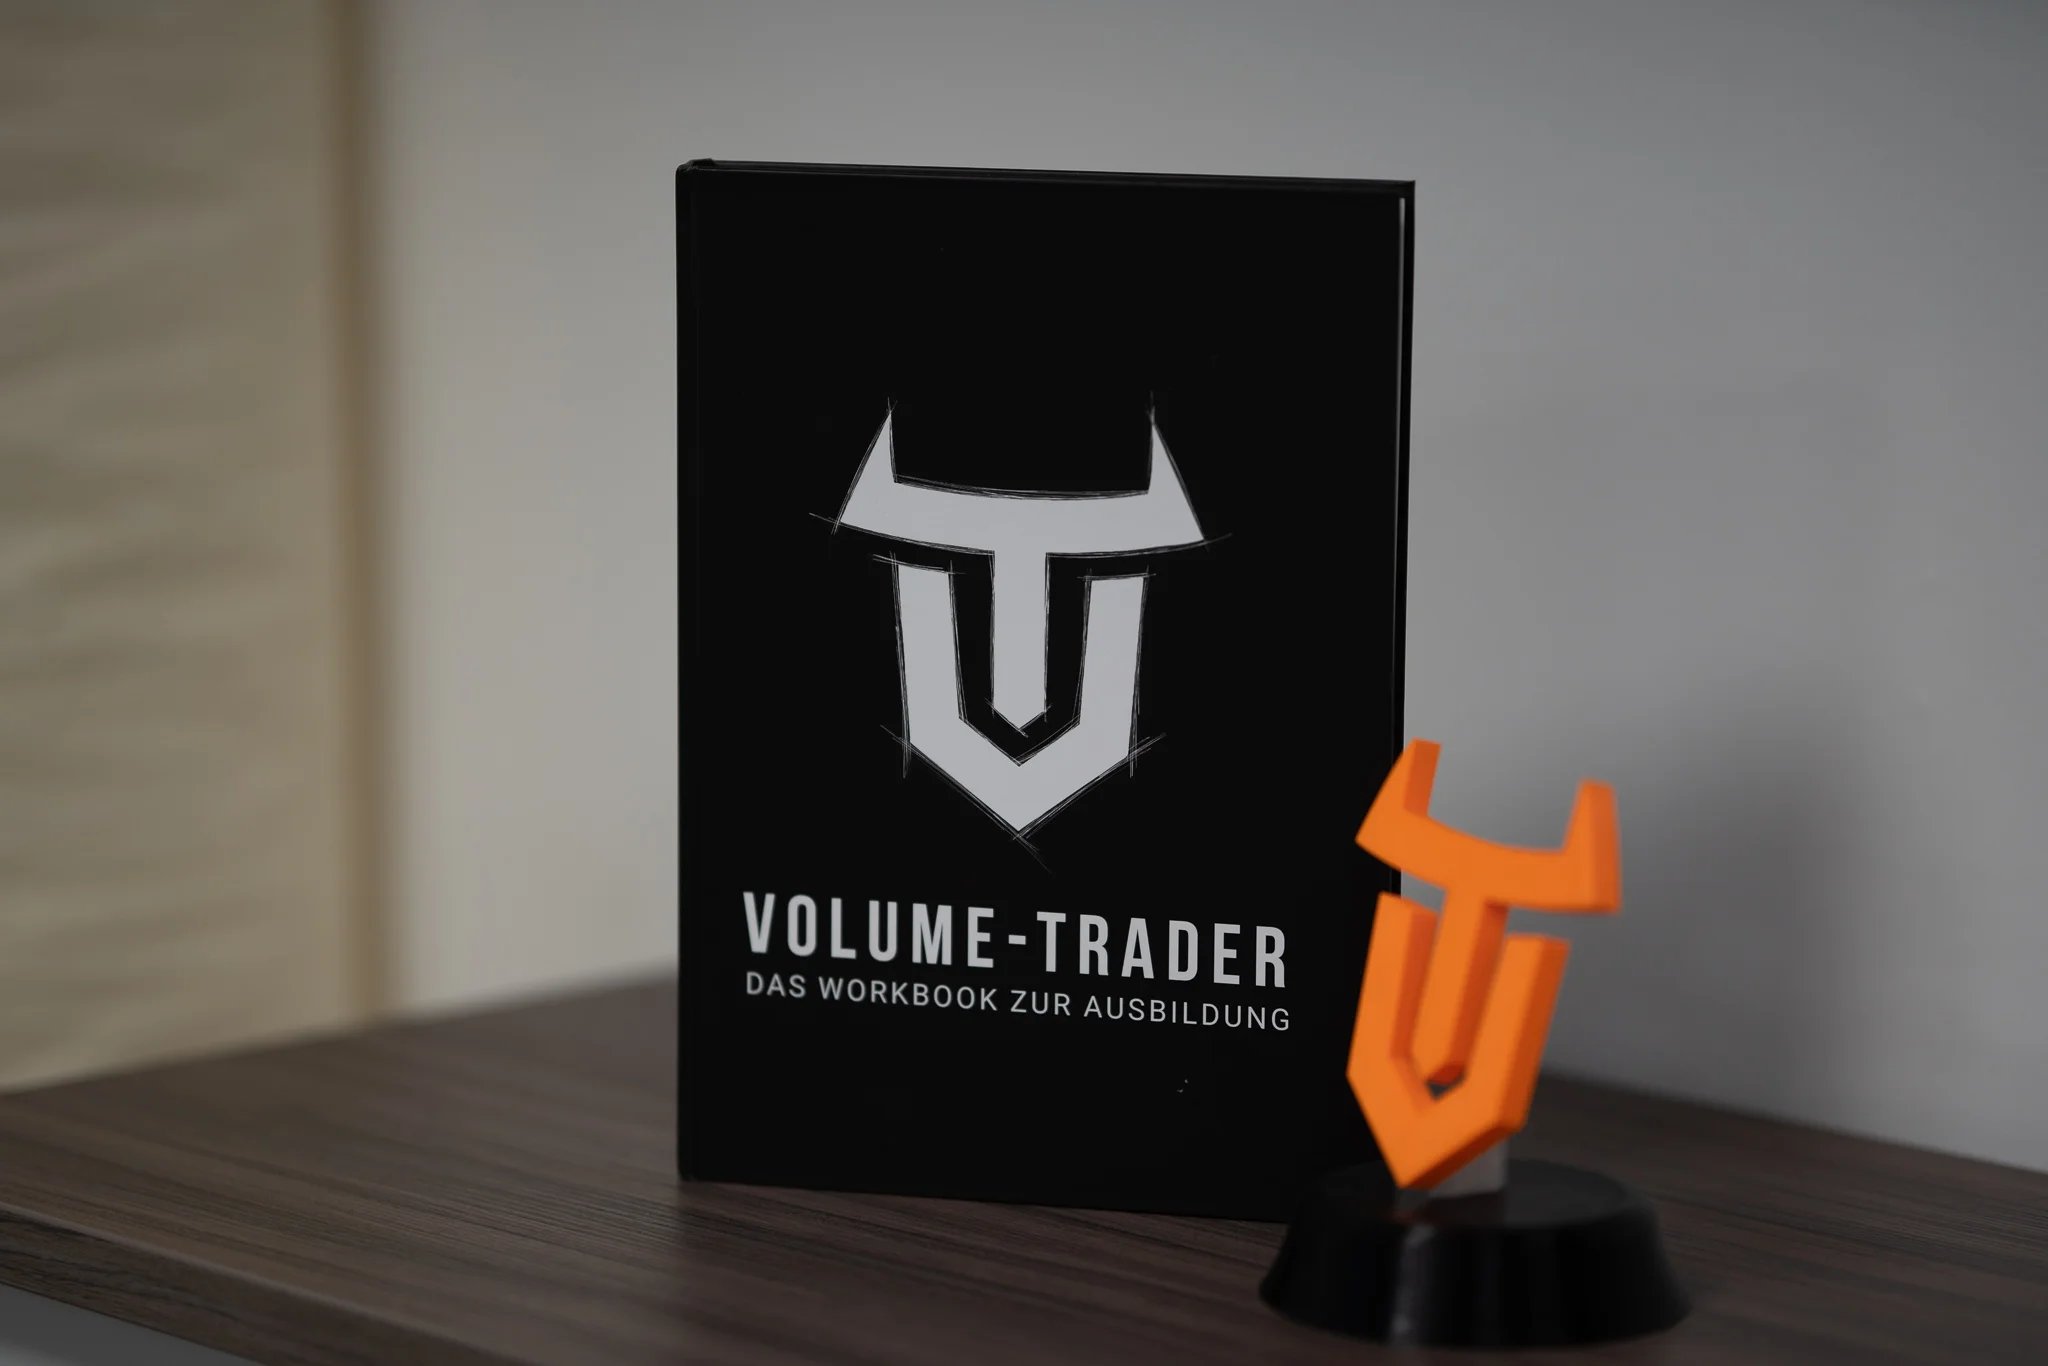 Nahaufnahme eines Buches, auf welchem "Volume-Trader Das Workbook zur Ausbildung" geschrieben steht. Daneben das Logo in Plastik